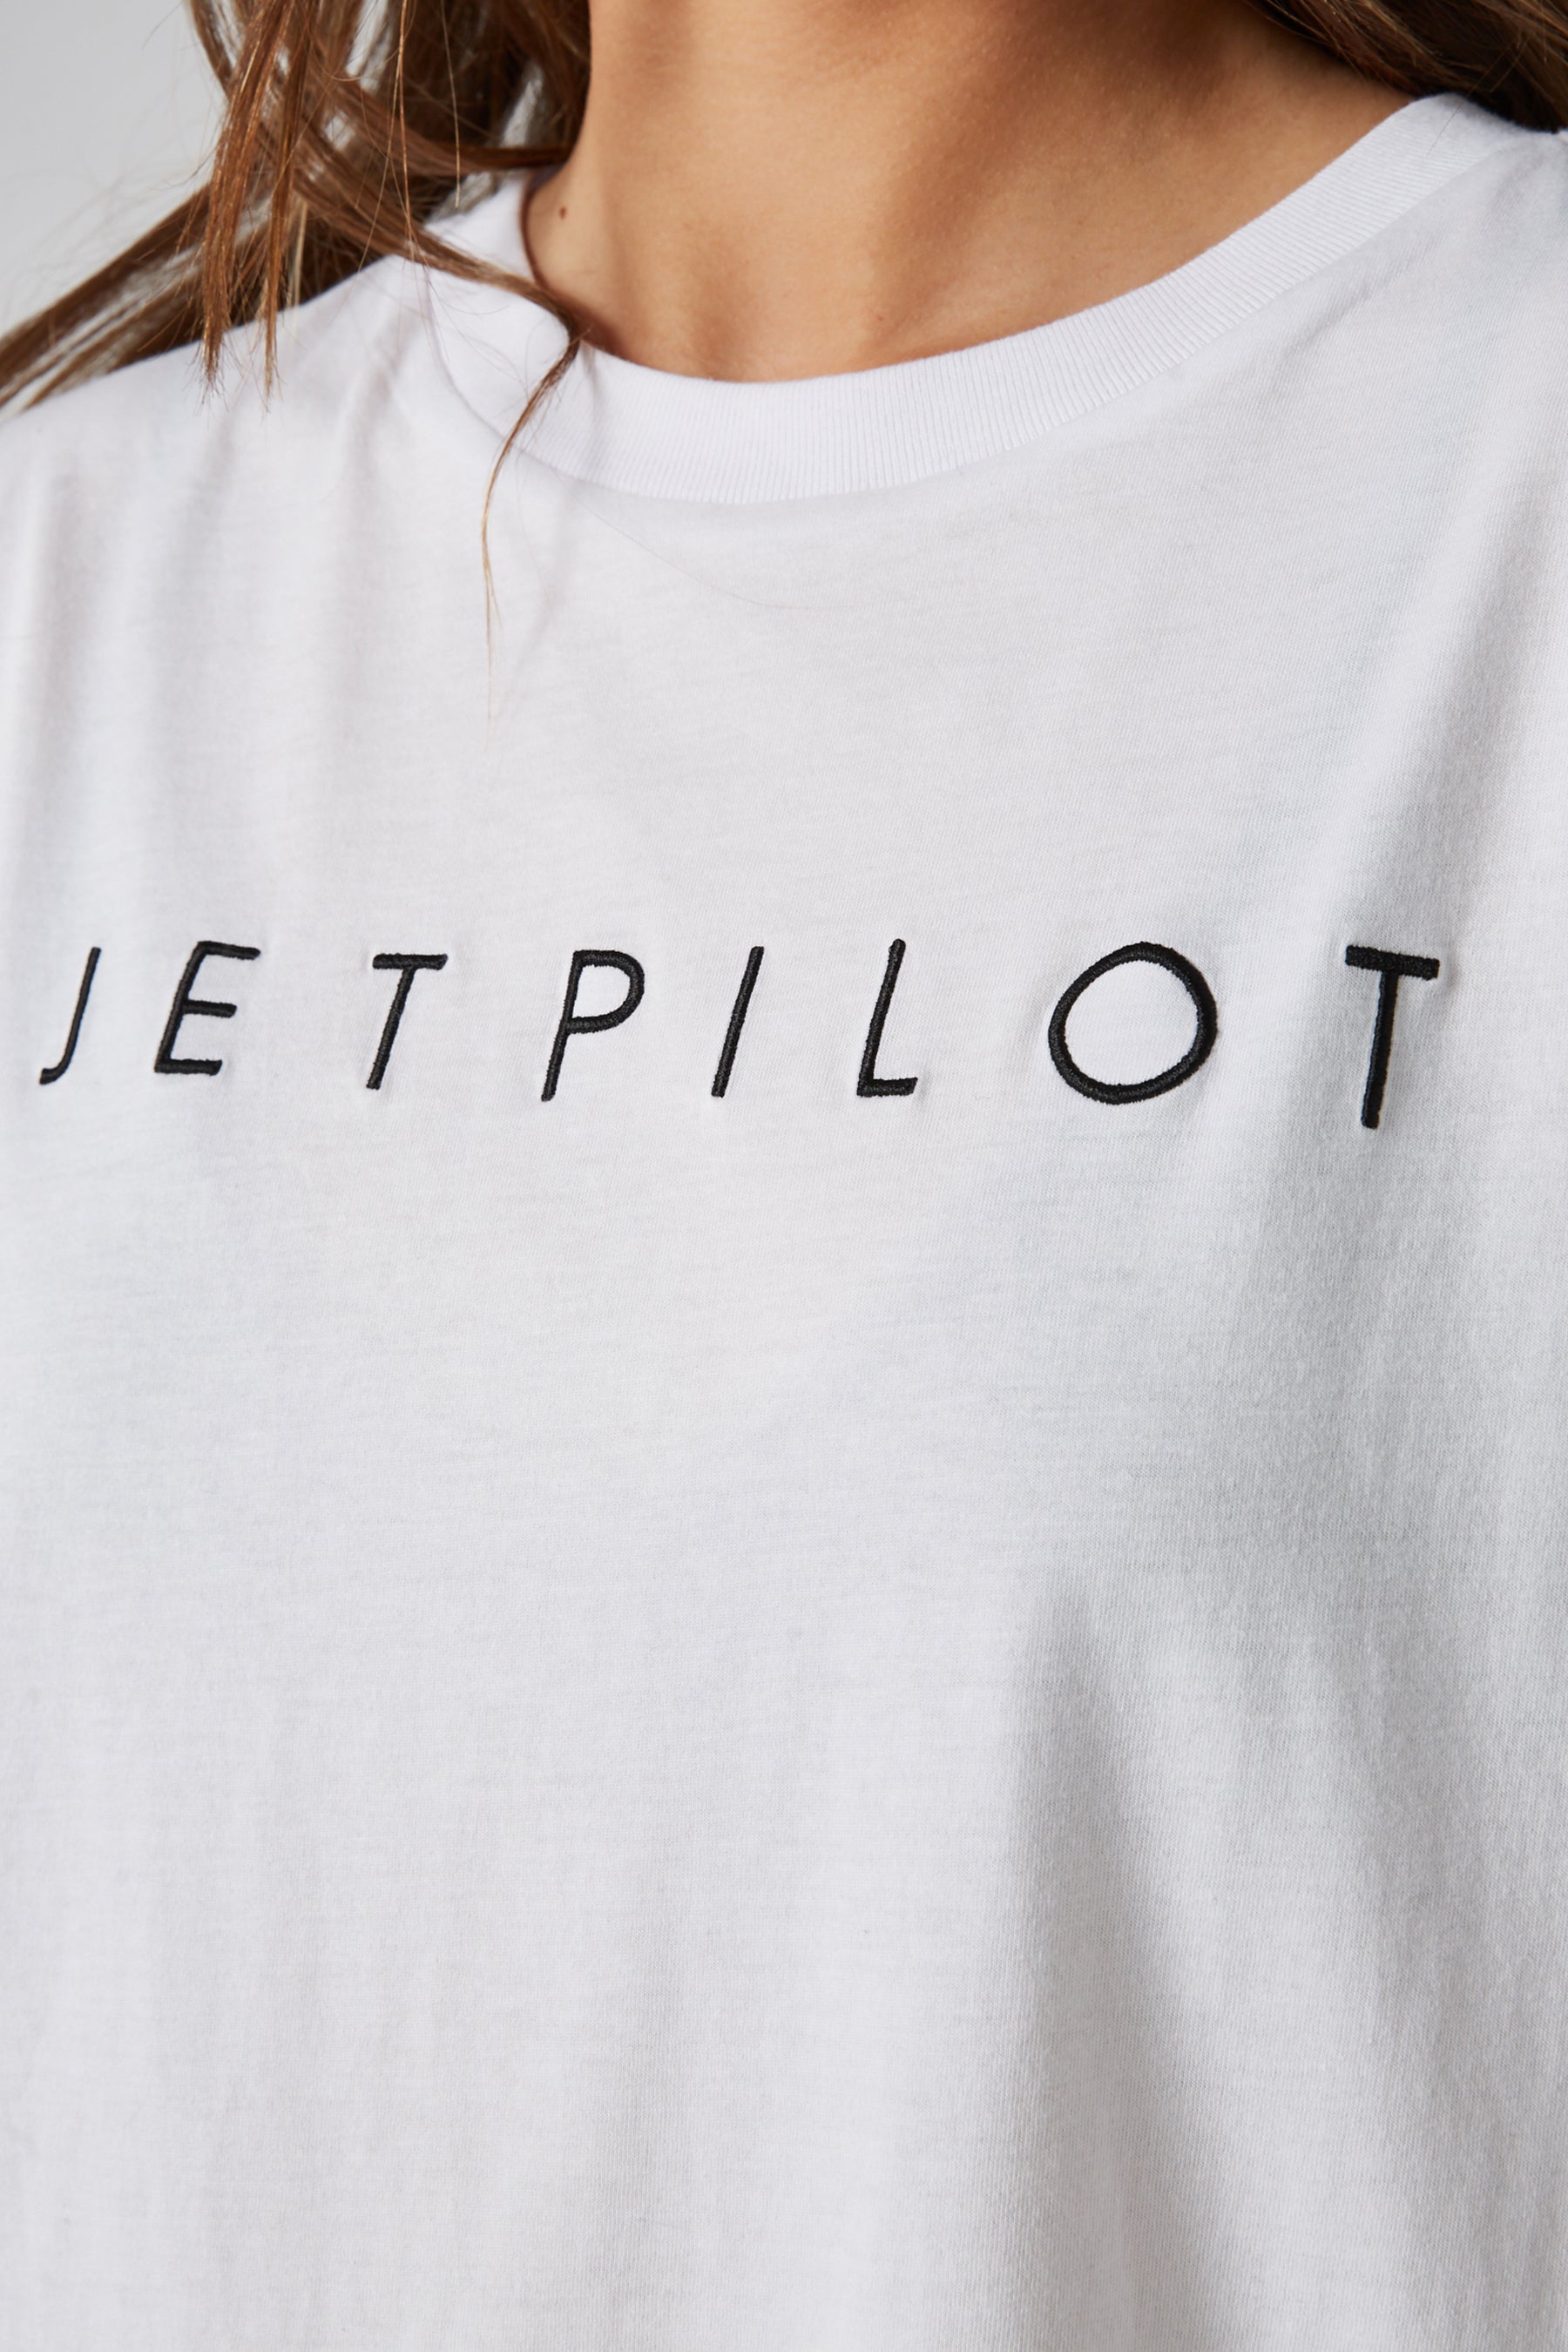 Jetpilot Simple Ladies Oversized S/S Tee - White